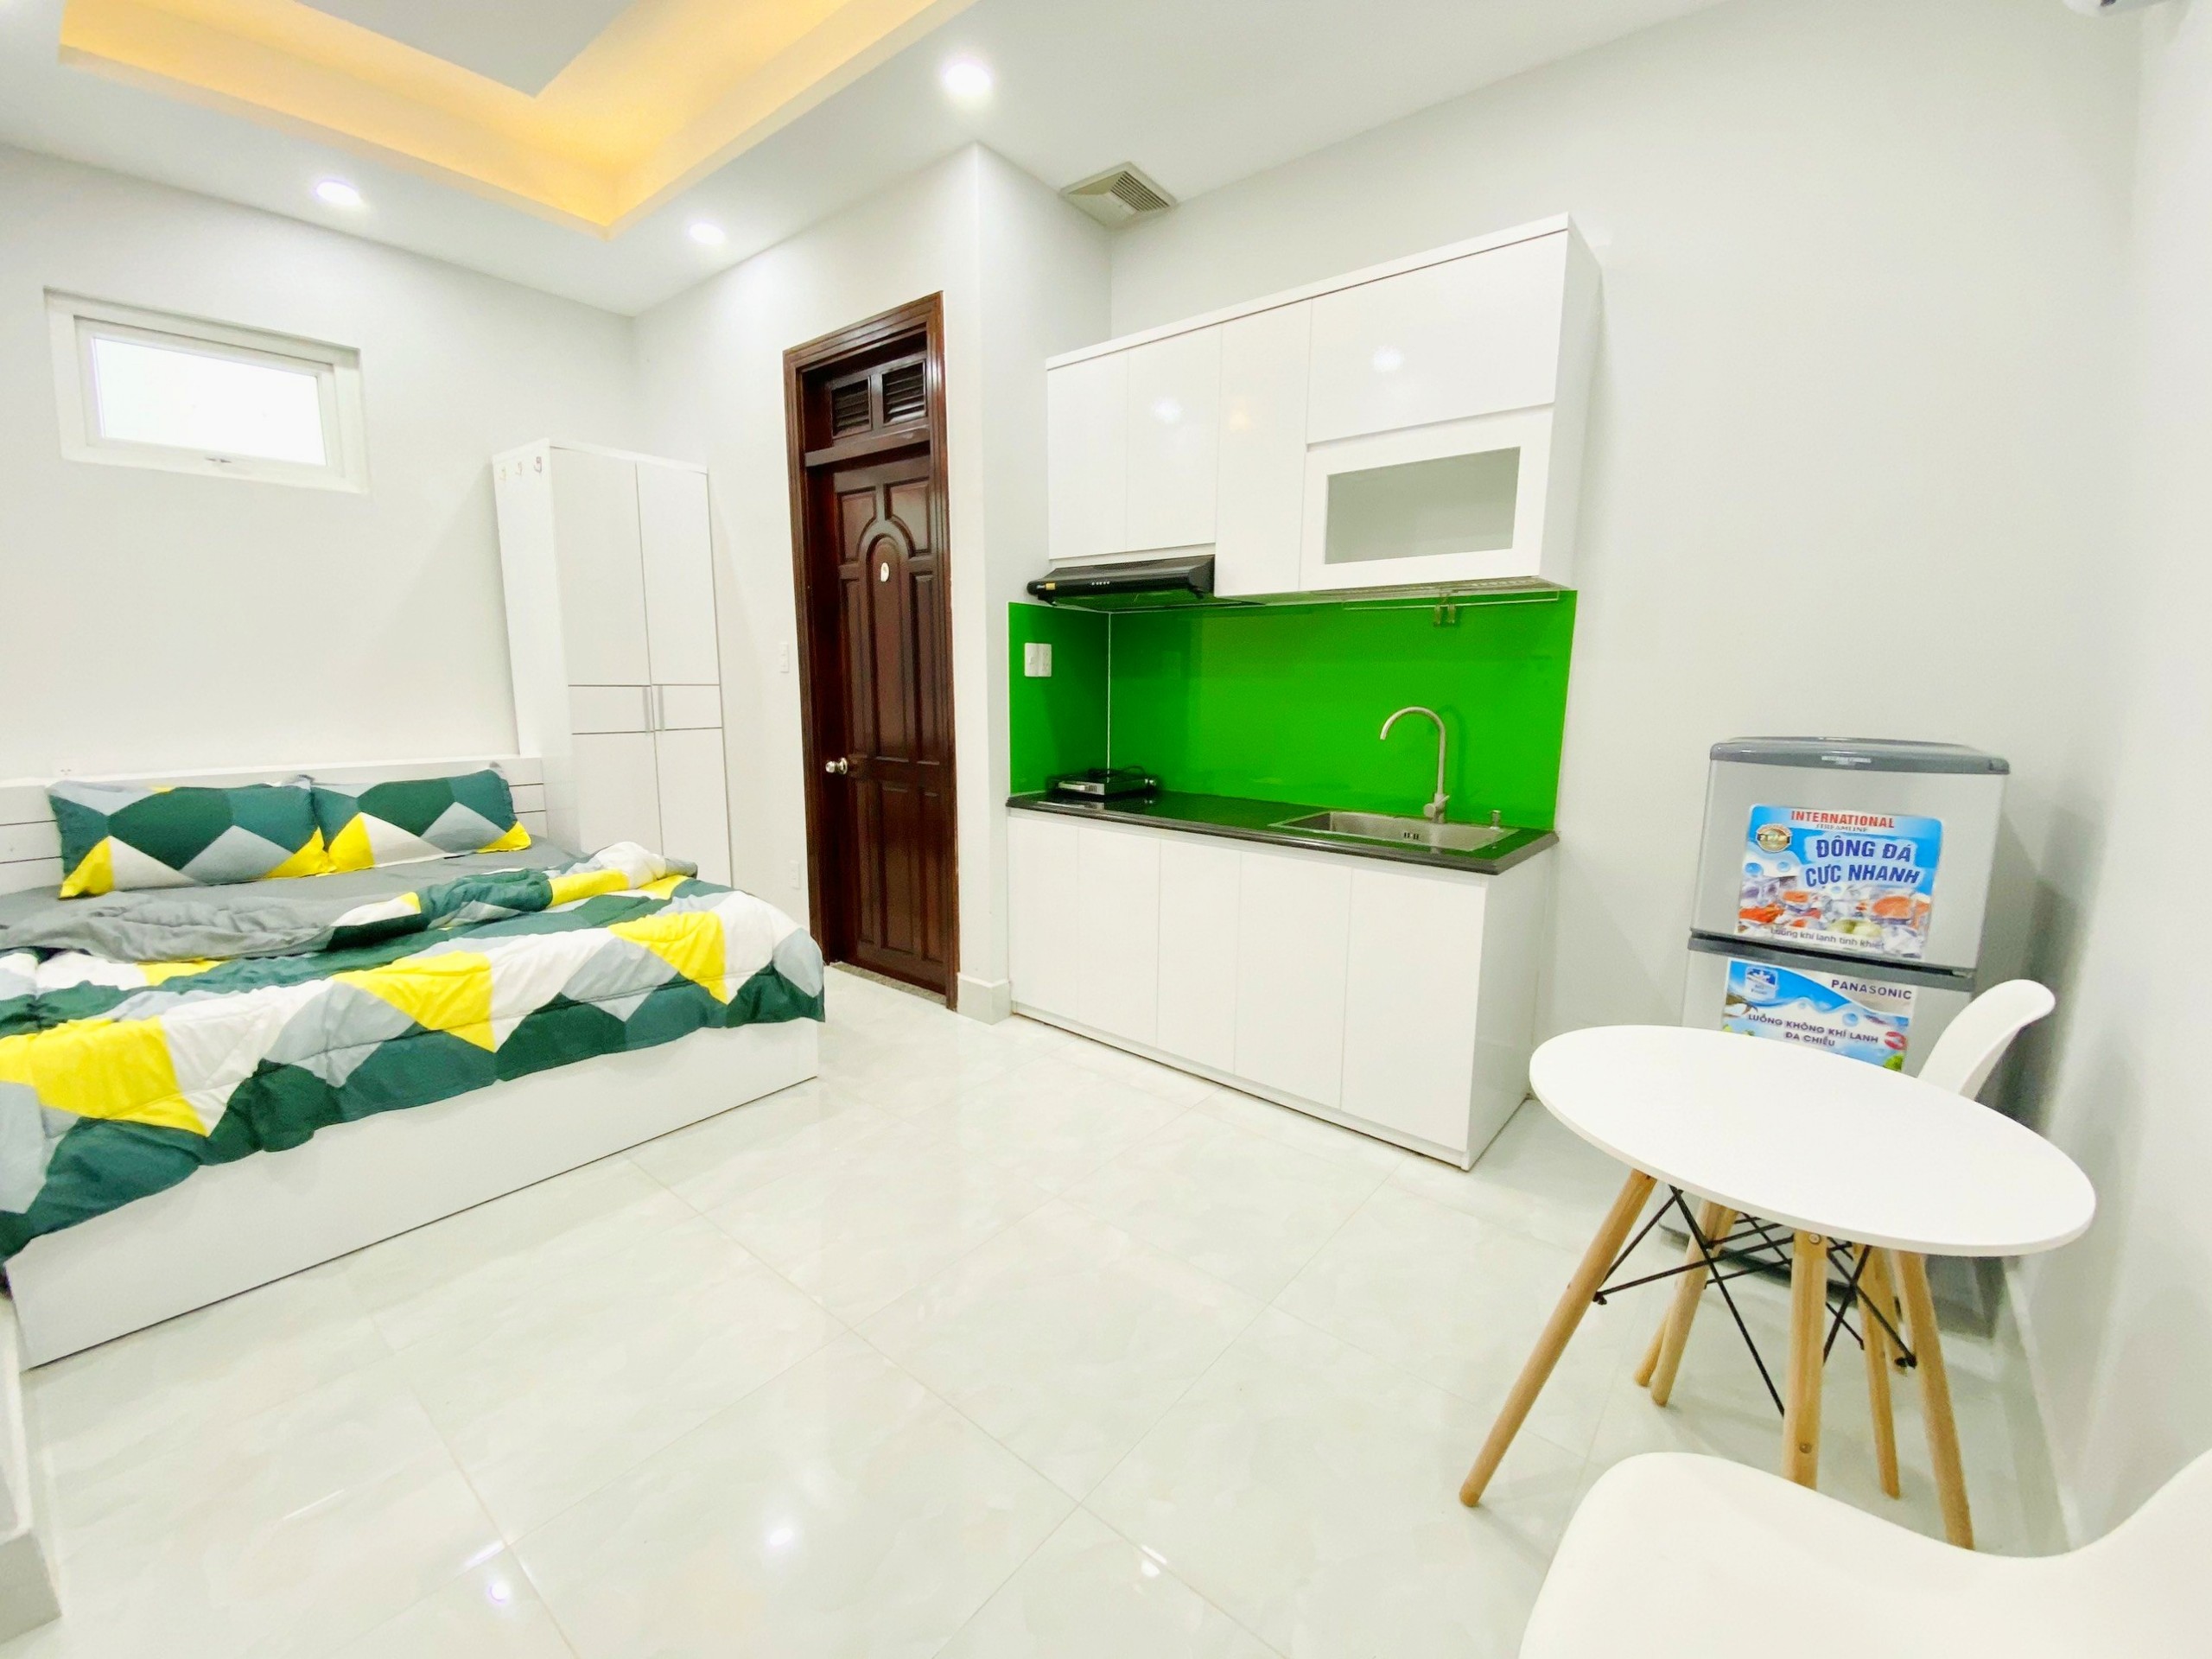 Sale cực lớn căn hộ mini mới xây chỉ còn 4TR7 cho hợp đồng 1 năm, đường Huỳnh Tấn Phát, Q7